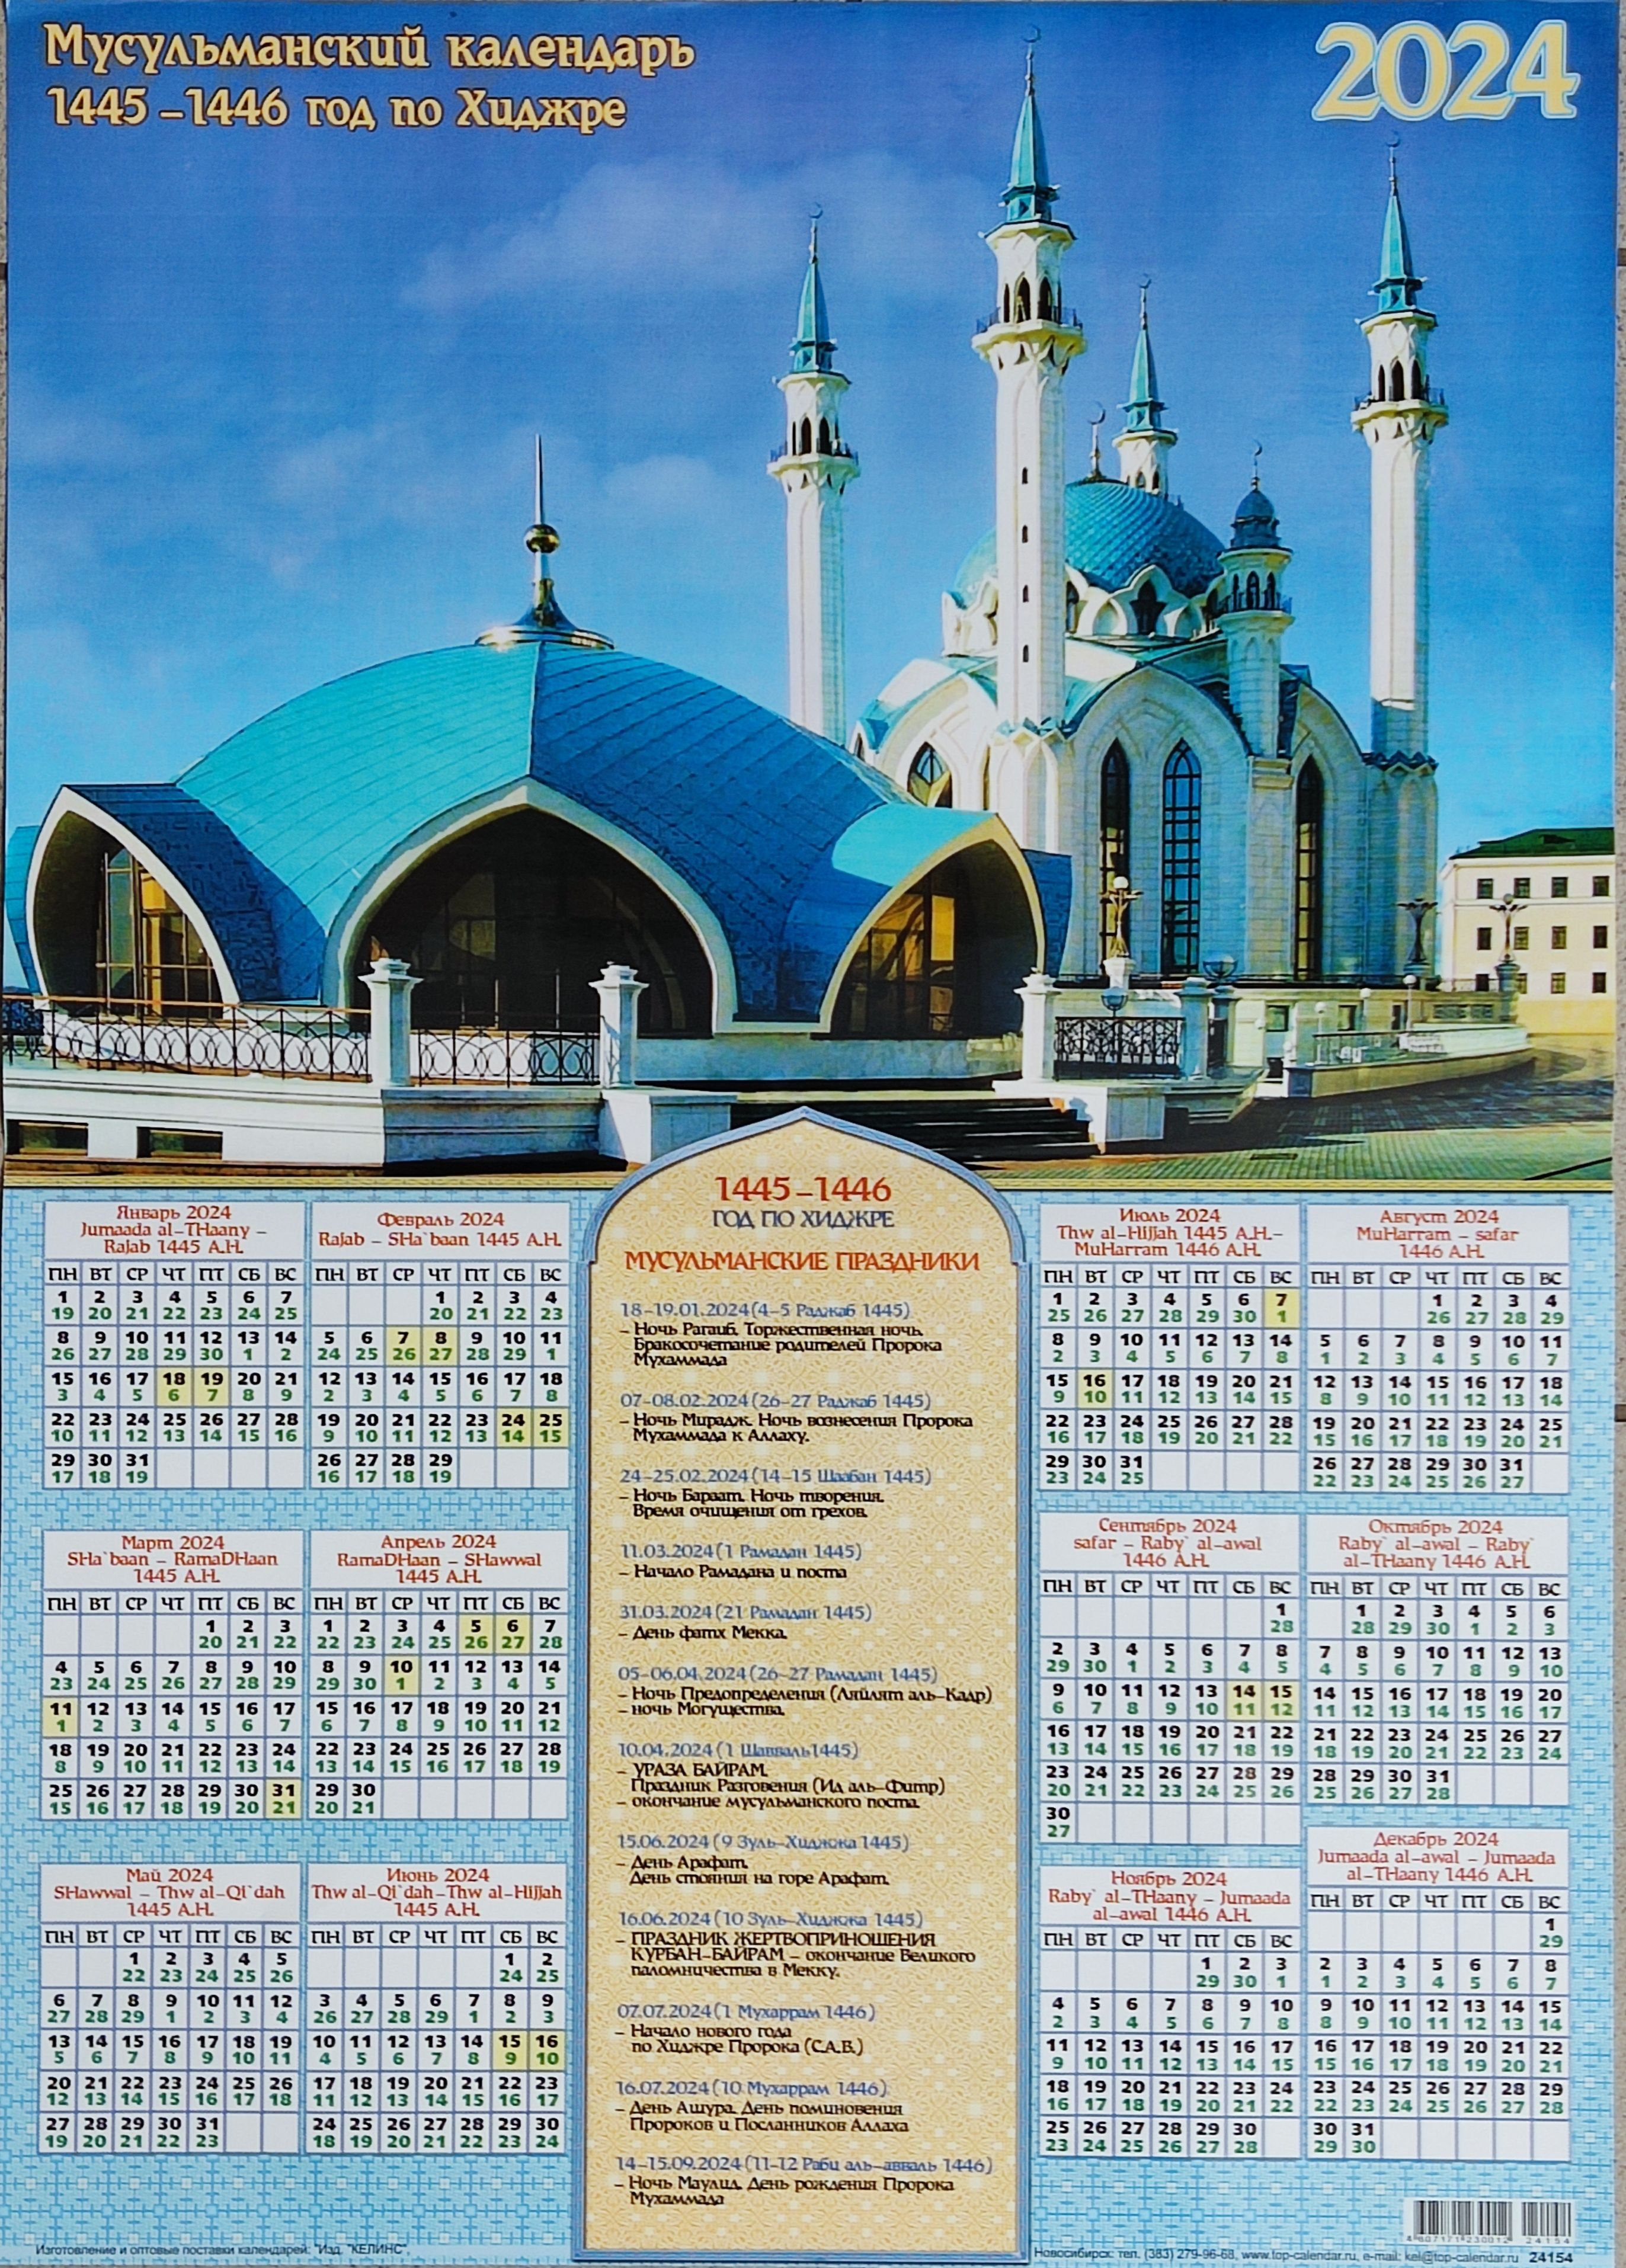 Мусульманский календарь 2024г. Мусульманский календарь. Календарь мусульманский календарь. Мусульманский календарь 2022. Исламский календарь 2022.